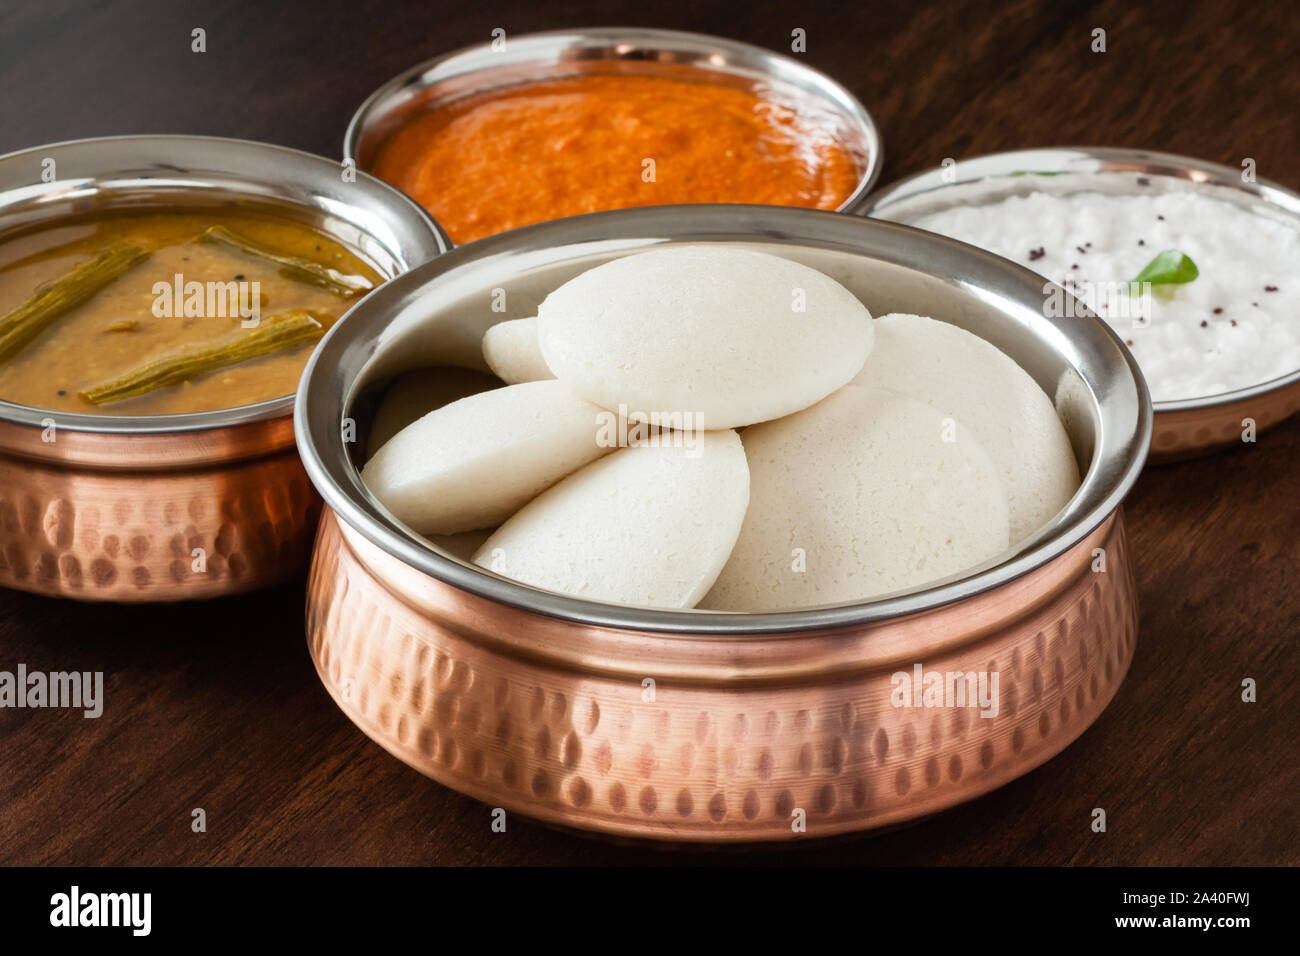 Les bras croisés et chutney indien avec Sambar indien à la vapeur douce - les bras croisés (Idli / gâteau de riz) en cuivre authentique bol. Servi avec sauce tomate et noix de coco Chutney. Banque D'Images